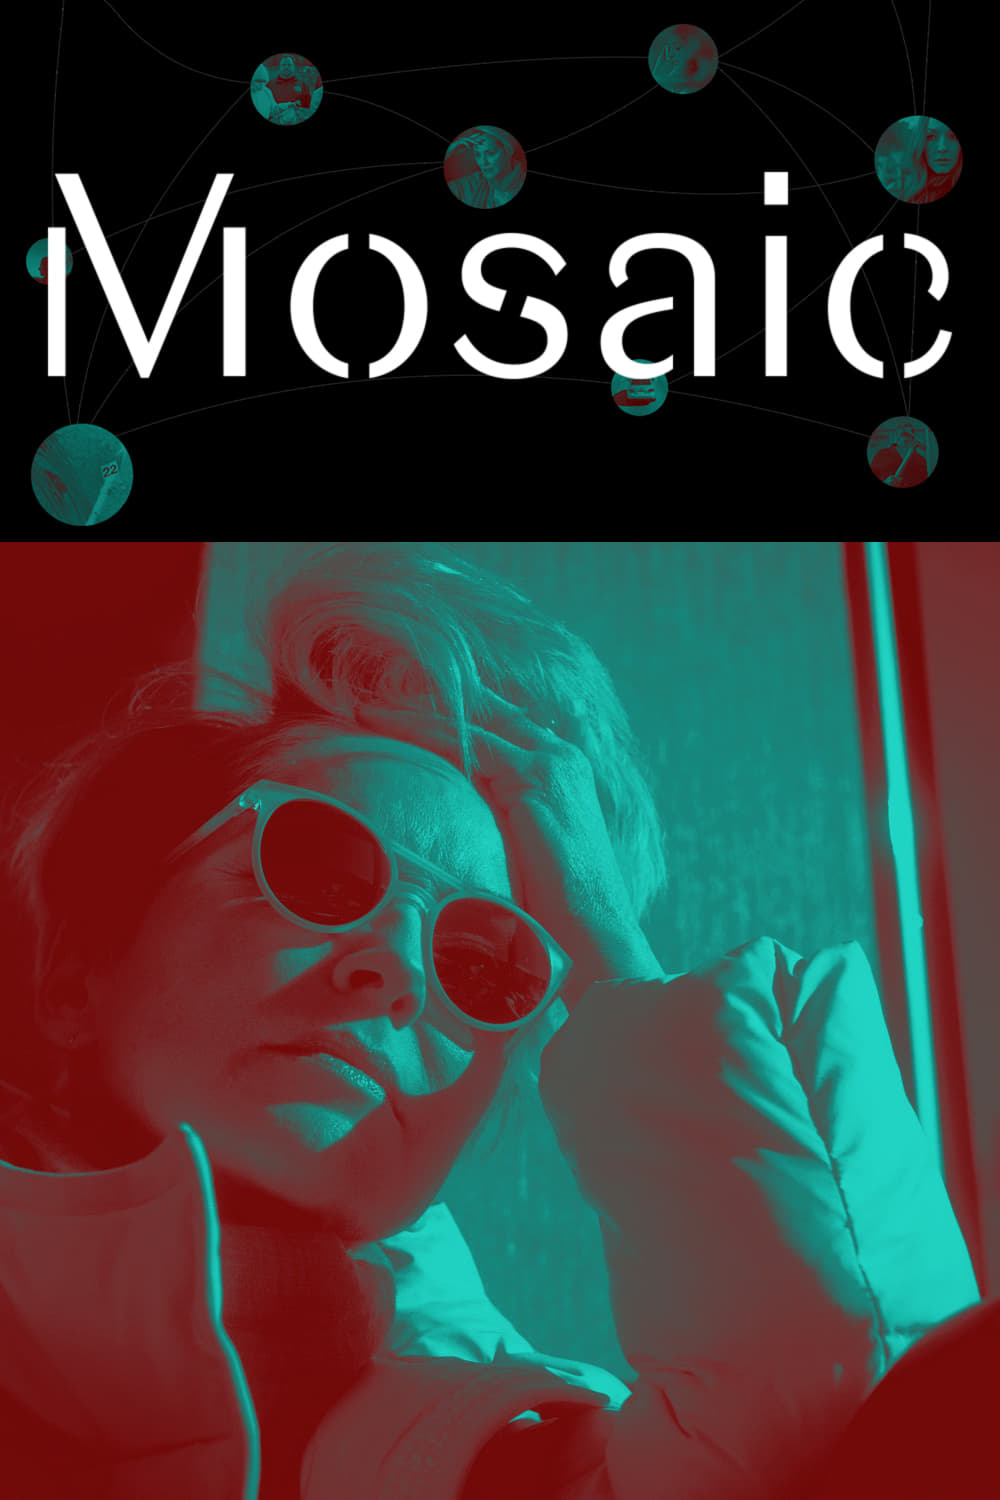 Mosaic rating